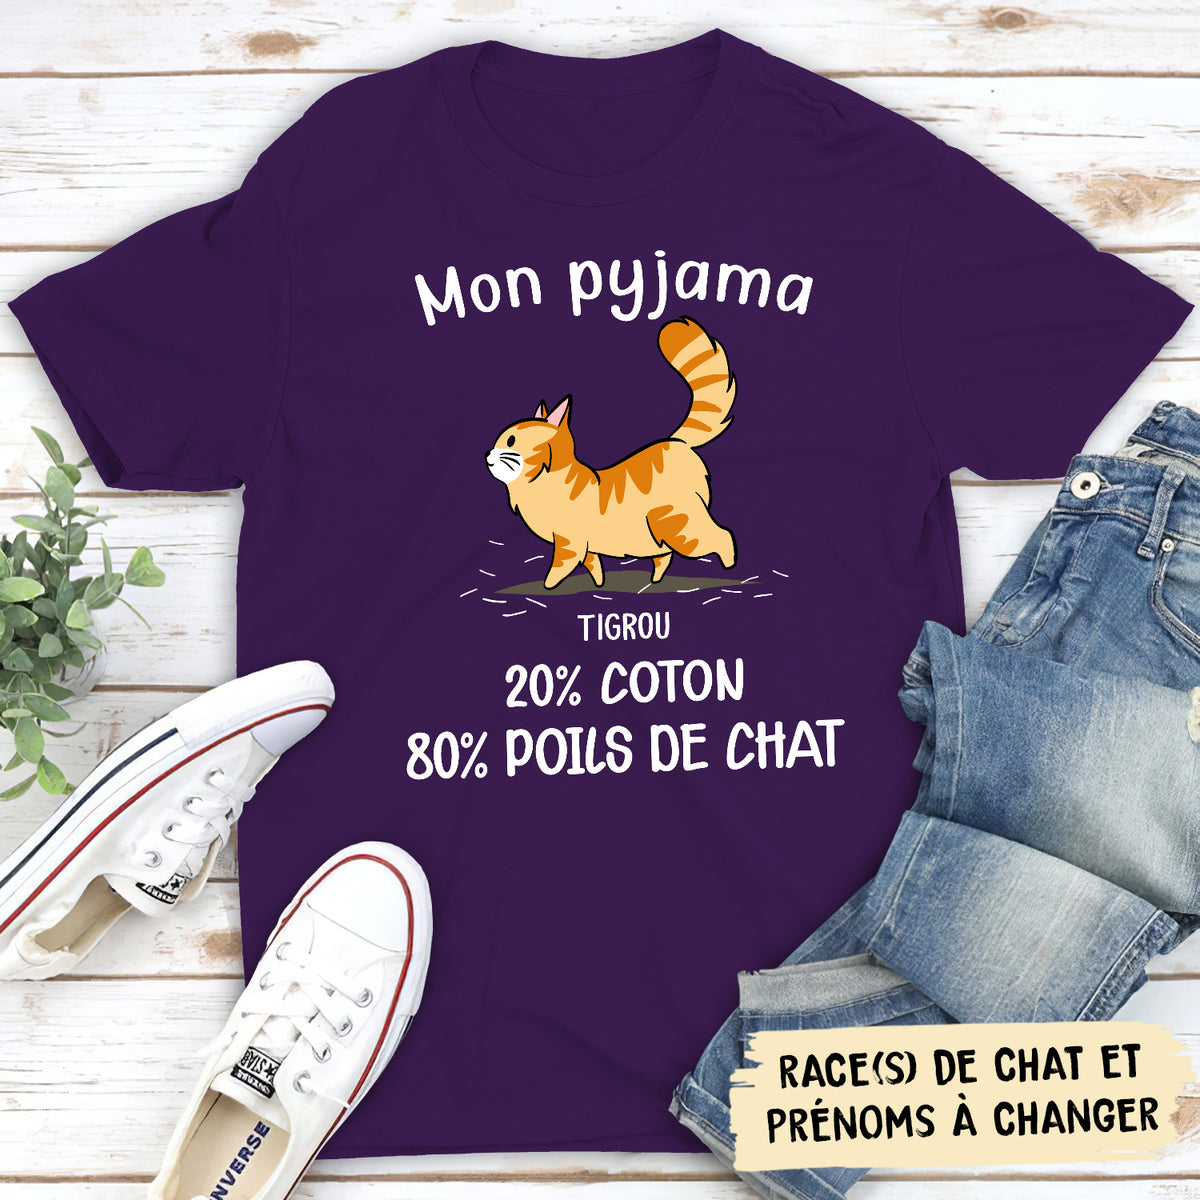 T-shirt Unisex Personnalisé - Mon Pyjama: 80% De Poils De Chat